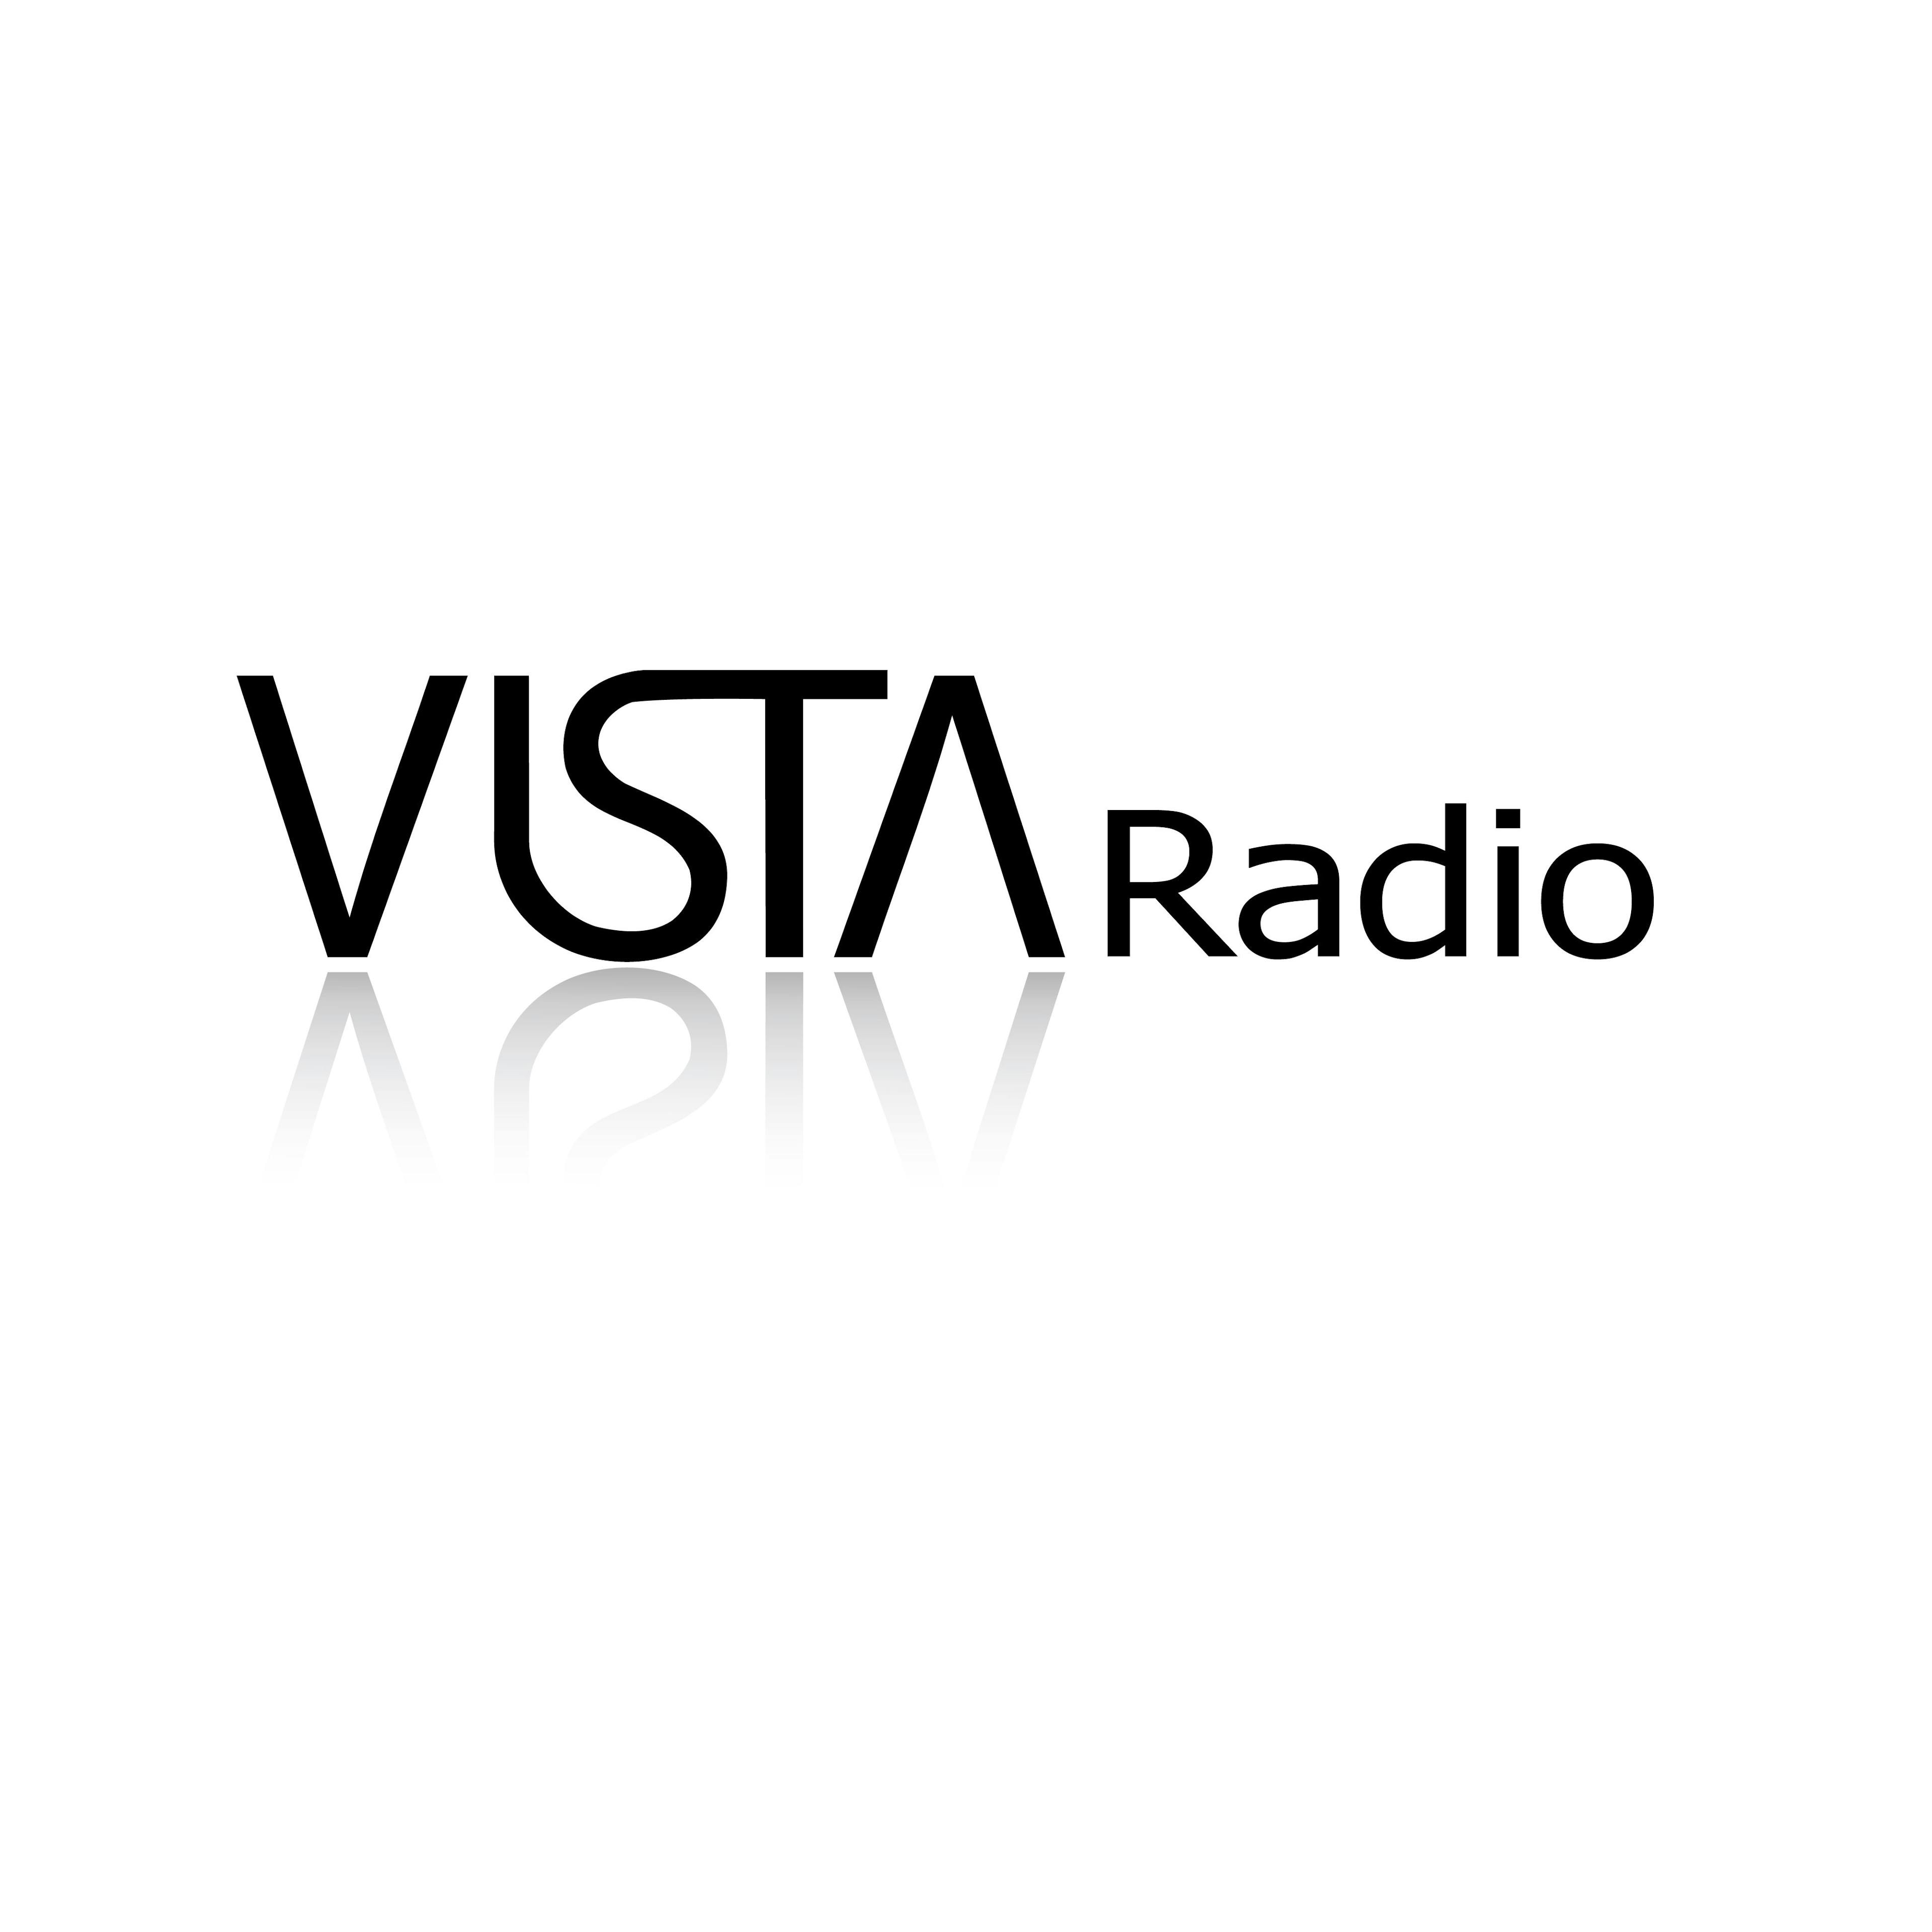 Vista Radio round White.jpg